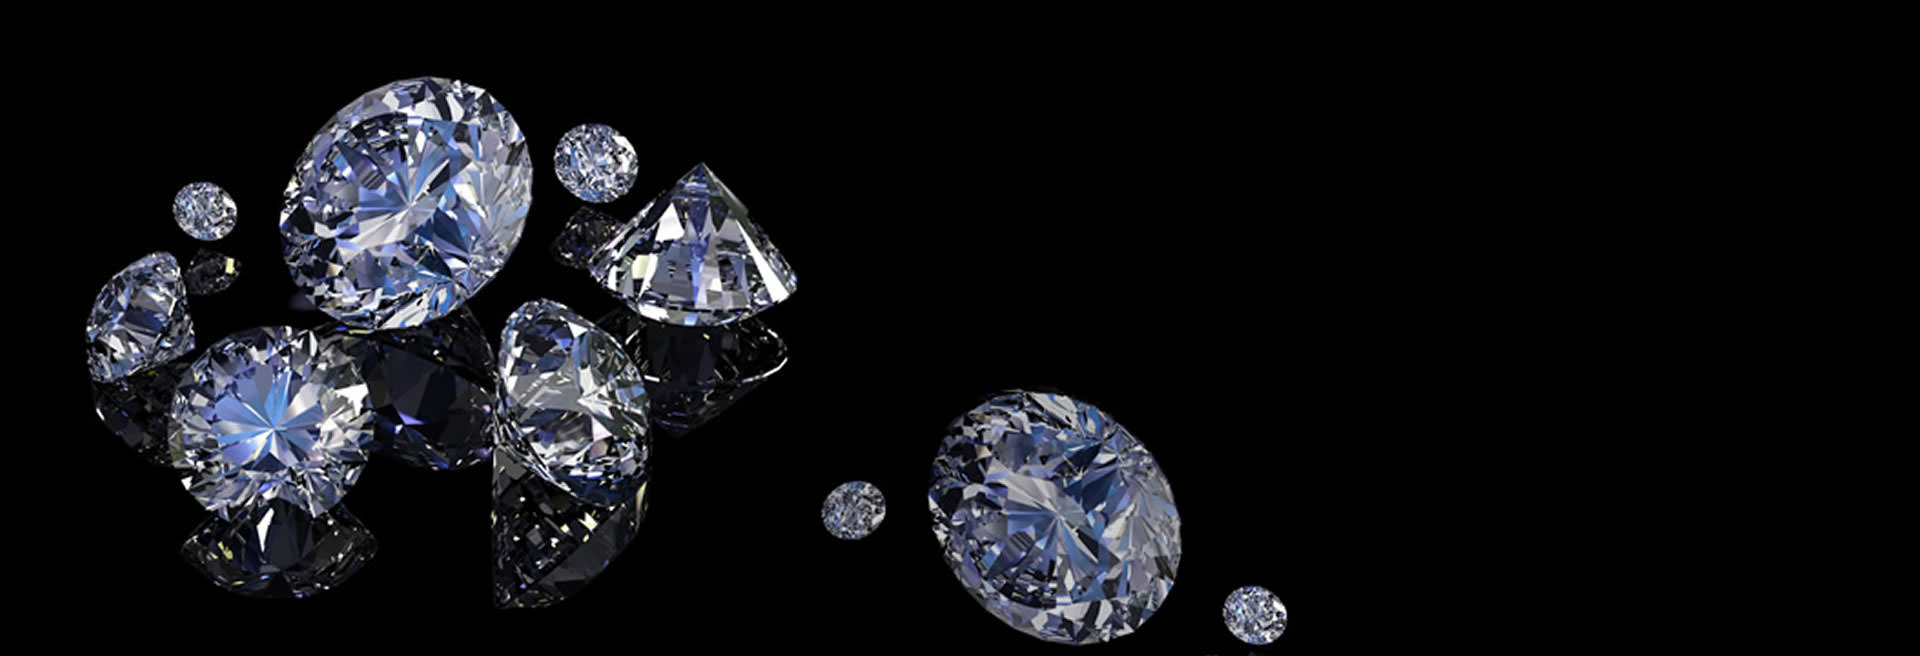 Background kim cương đá quý